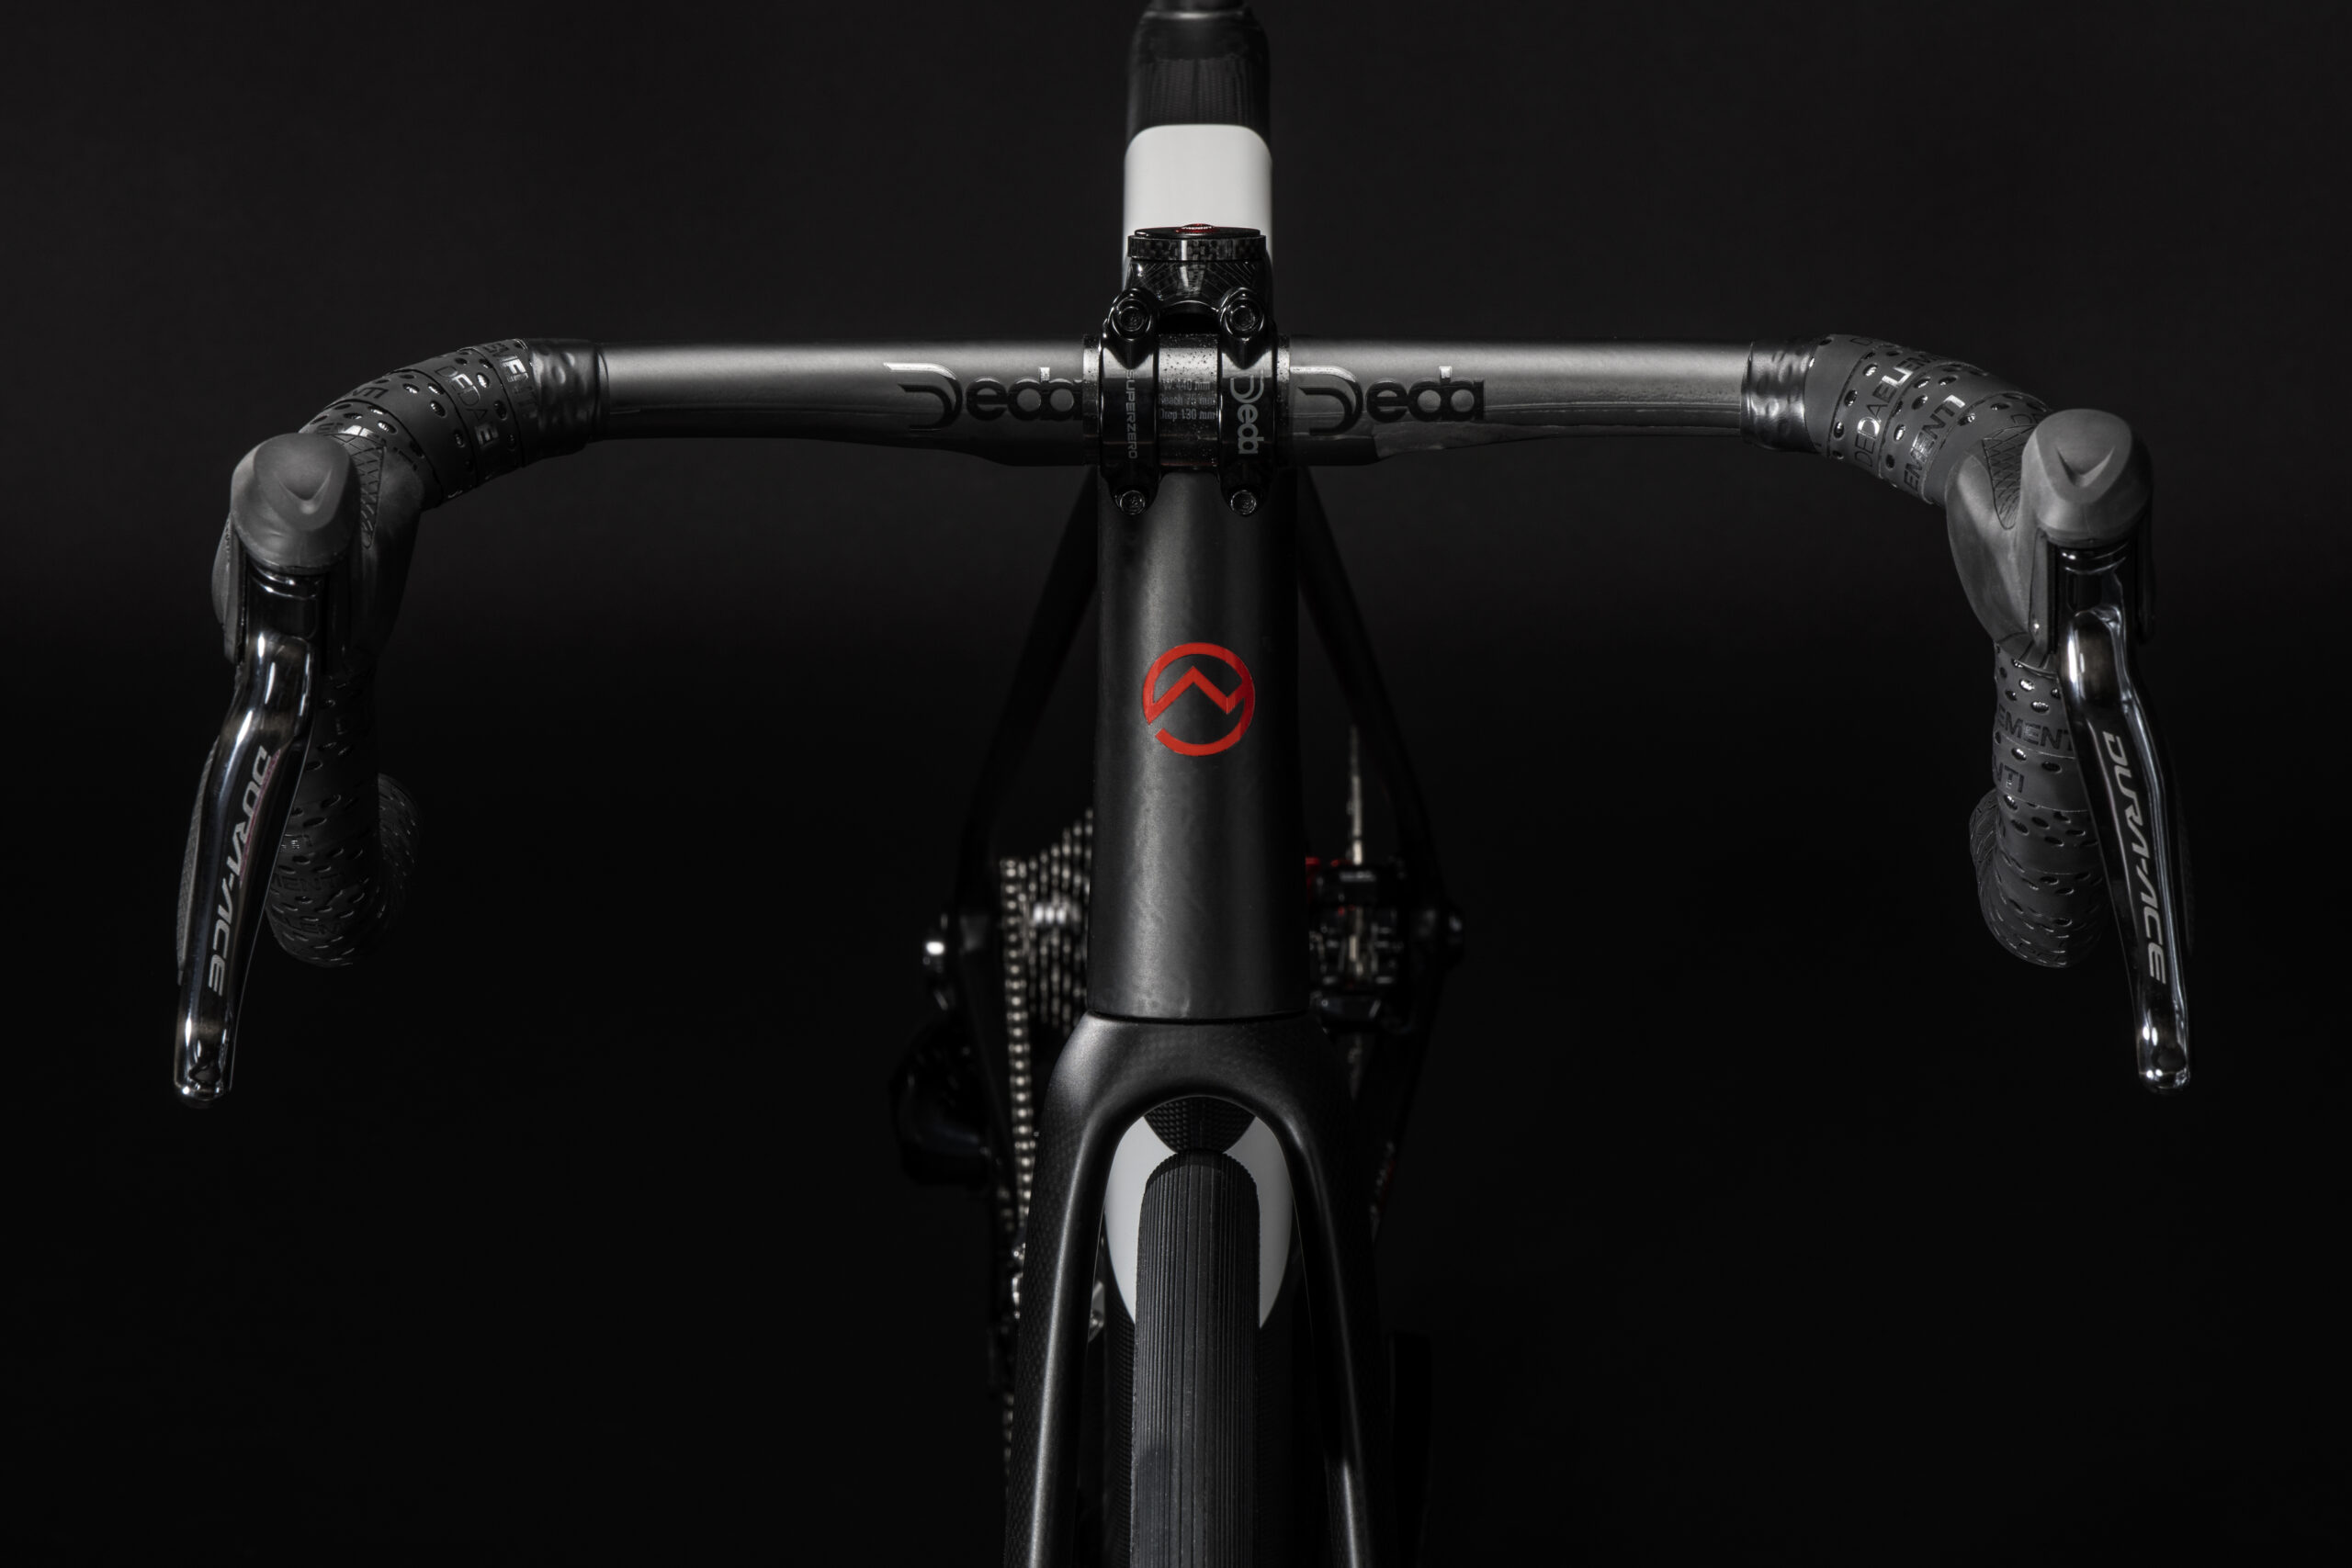 Rispesa frontale della bicicletta Officine Mattio modello Lemma 2.0 colorazione nero e bianco